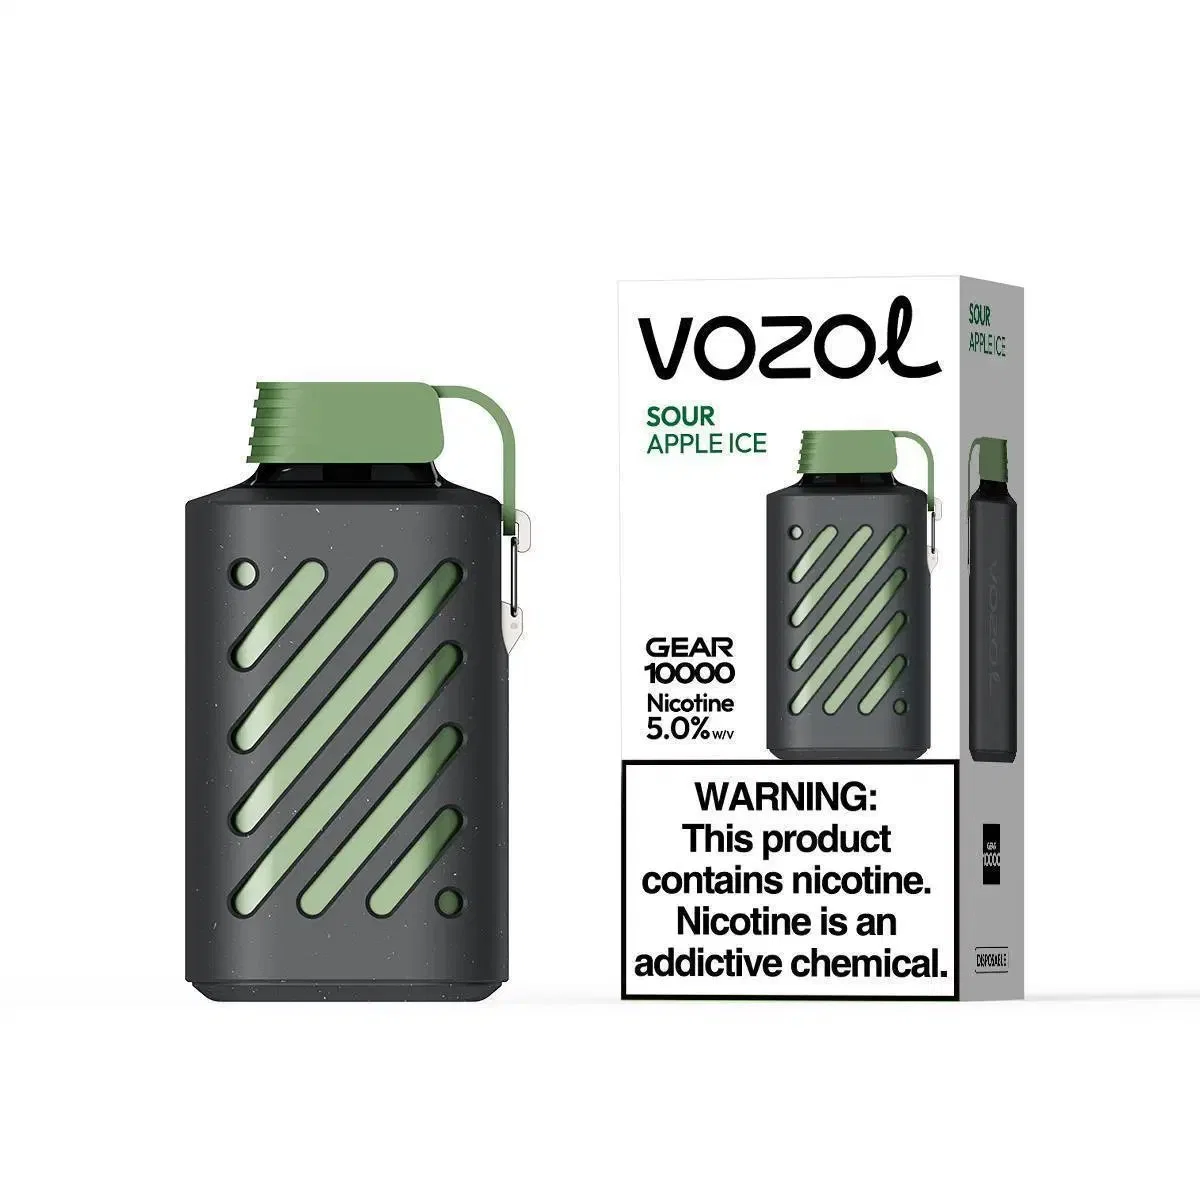 Vozol Gear 10000 Puff Big Cloud Smoking Disposable/Chargeable Vape Wholesale/Supplier vape Wholesale/Supplier Device Atomizer 10000puffs Empty E-Cig Pod Vaporizer Vape